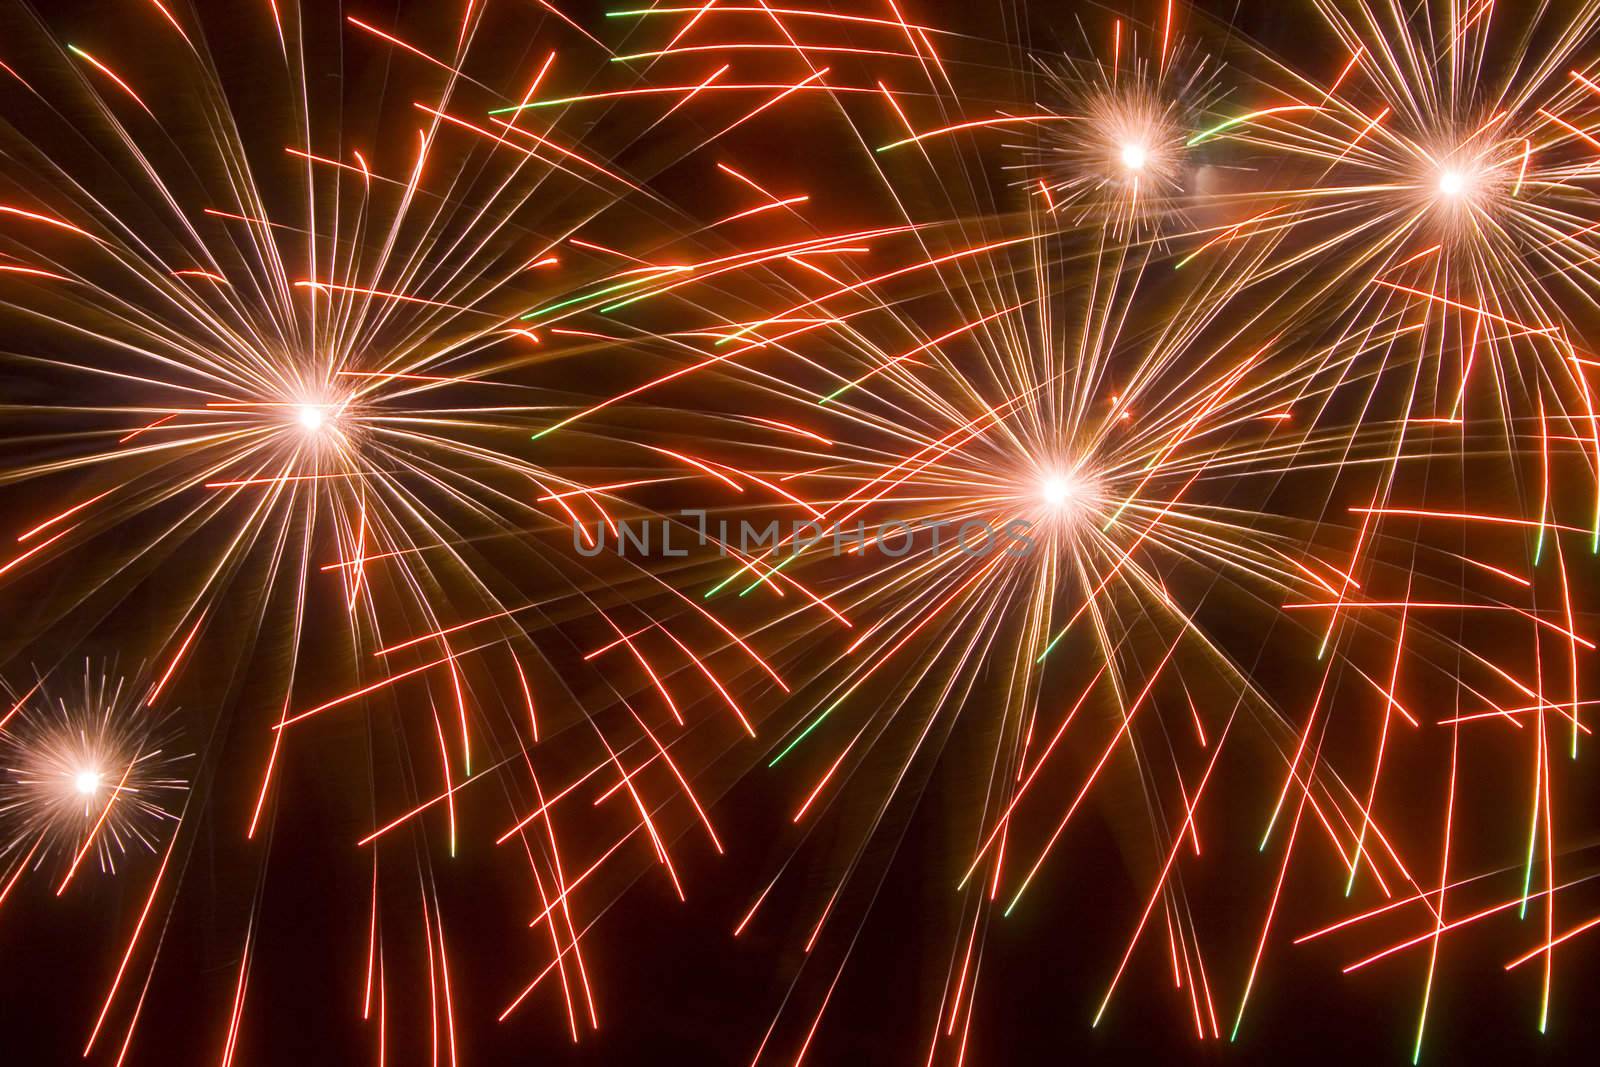 Fireworks 68 by Dan70